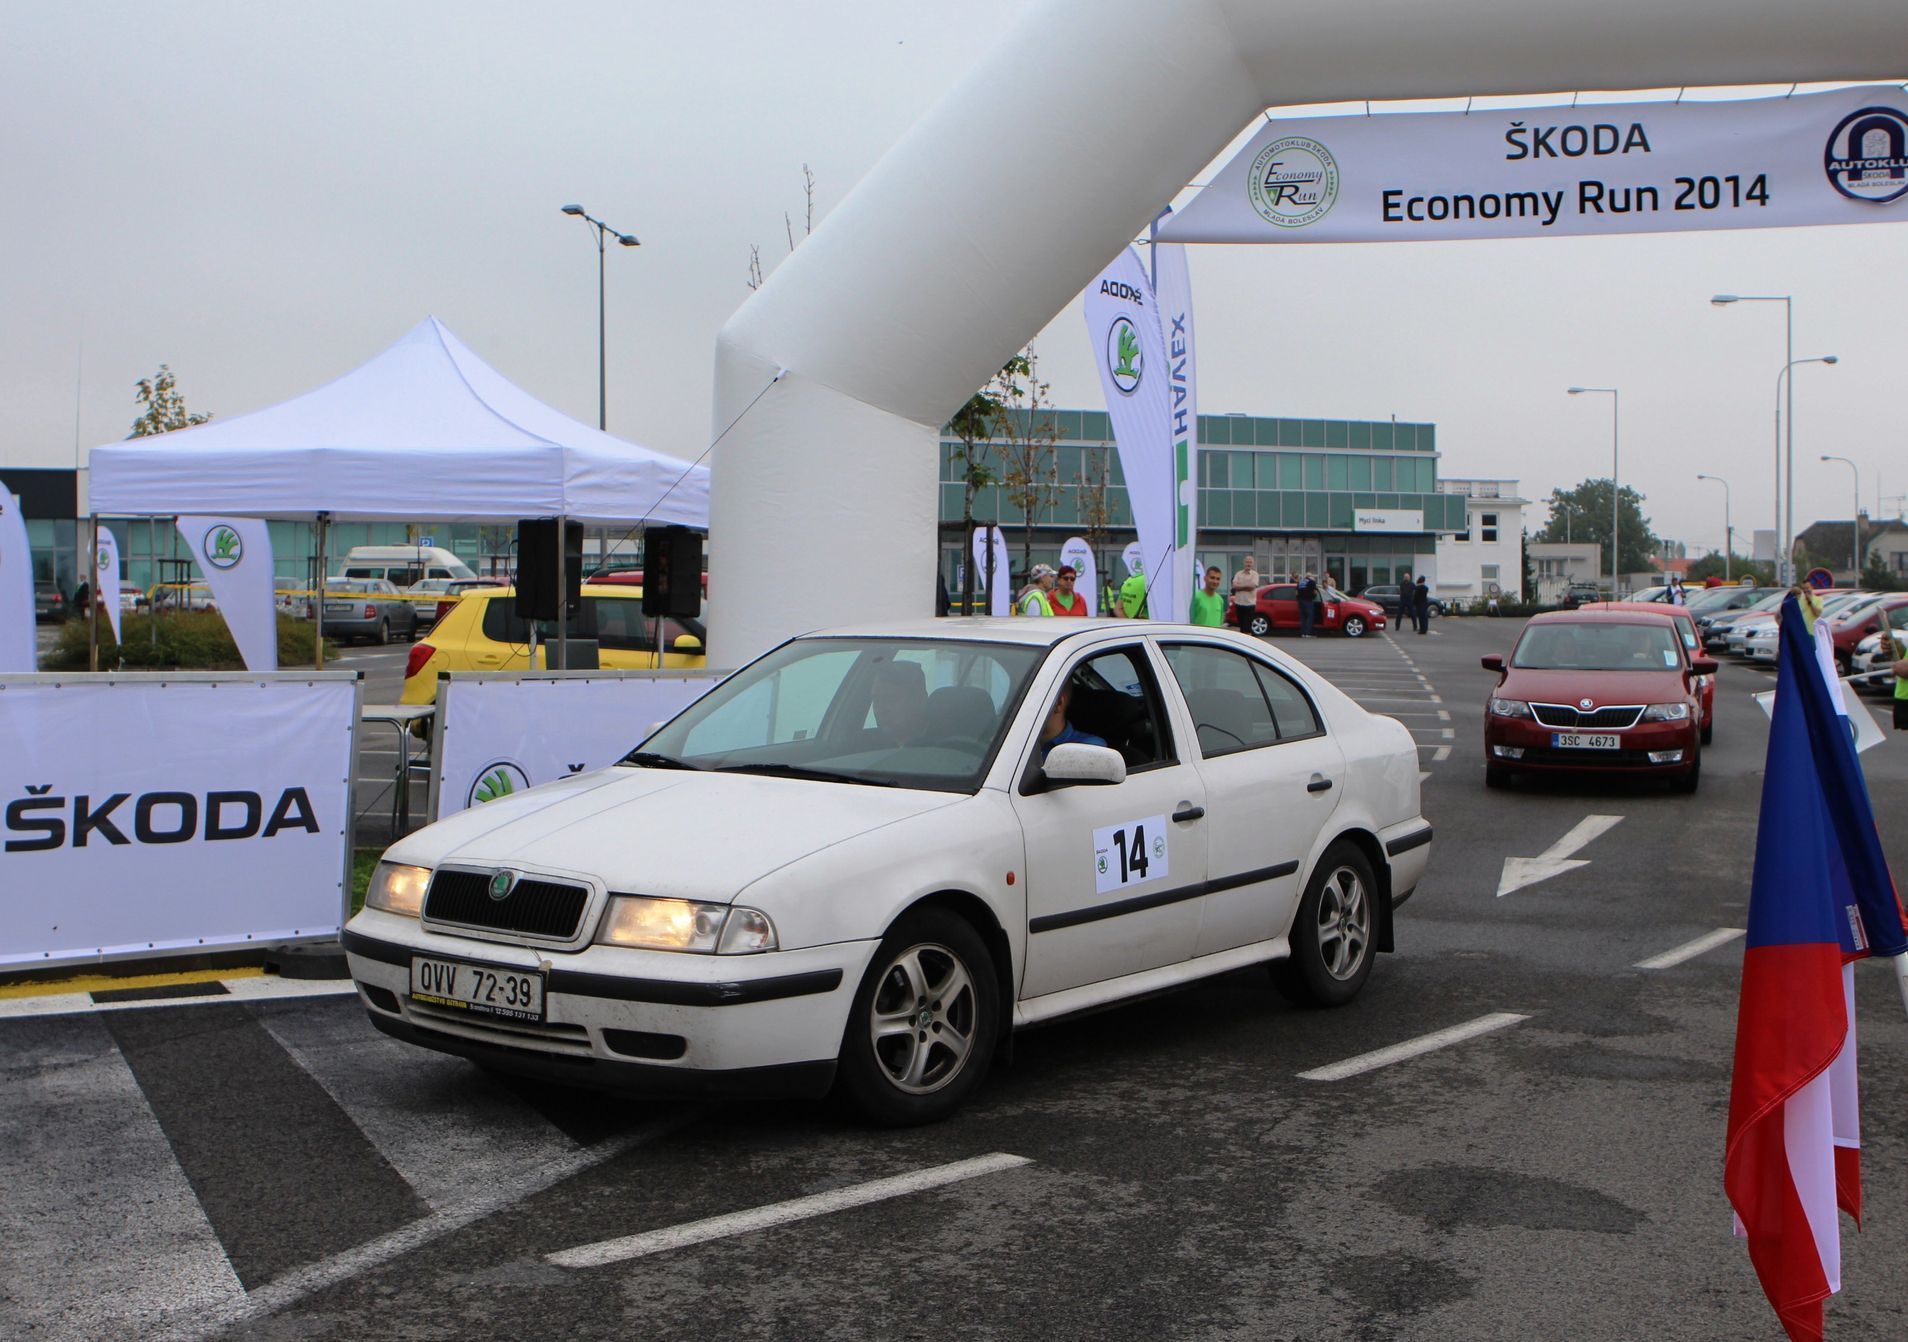 Škoda economy run 2014 - start